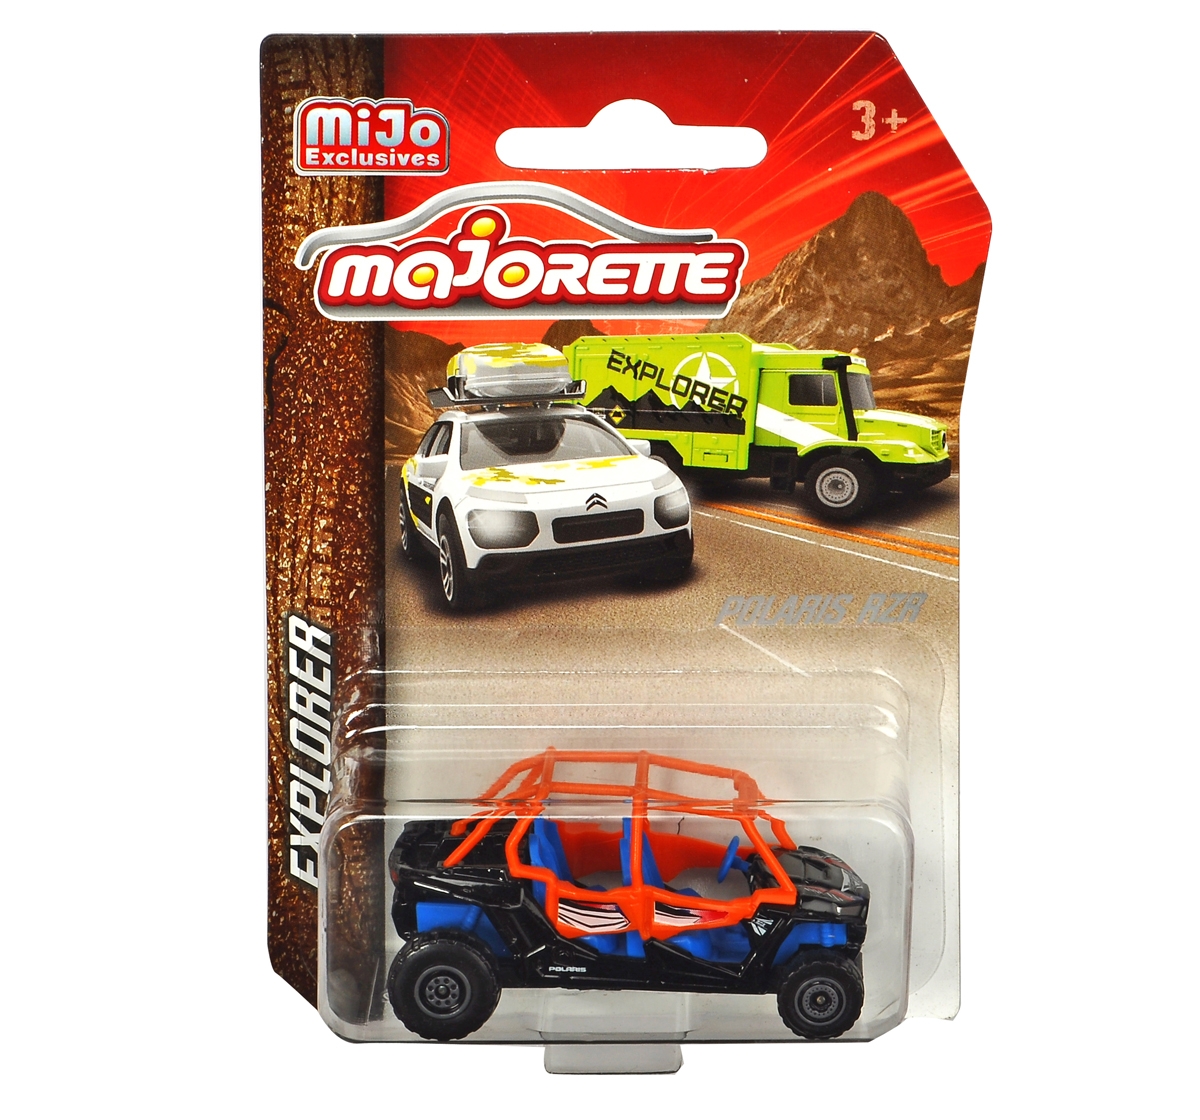 Majorette | Majorette Explorer Die Cast Vehicle Toy for Kids, Assorted, 3Y+ (Multicolor)